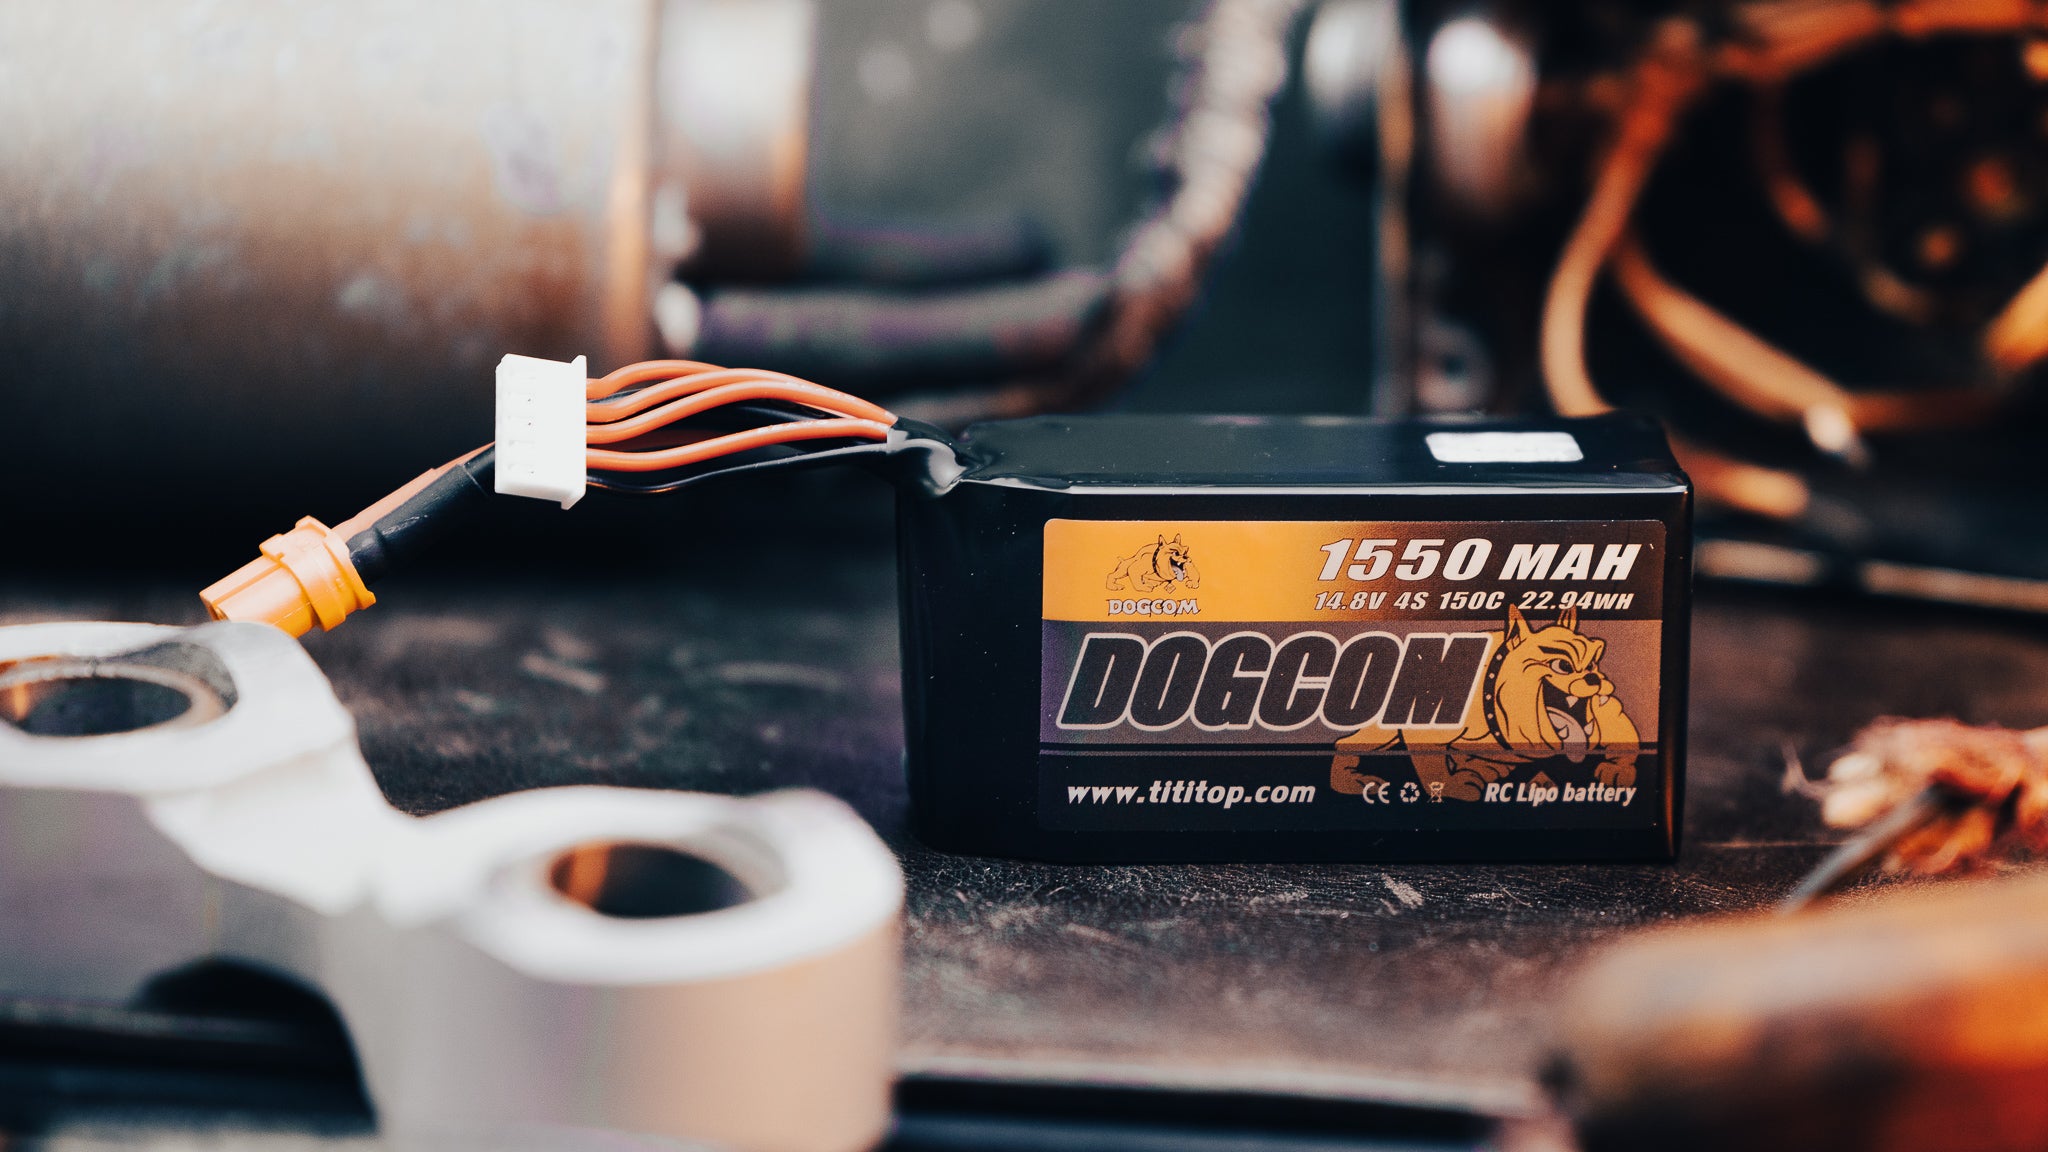 Batterie Lipo Dogcom 4S 1550mAh 150C - Drone-FPV-Racer